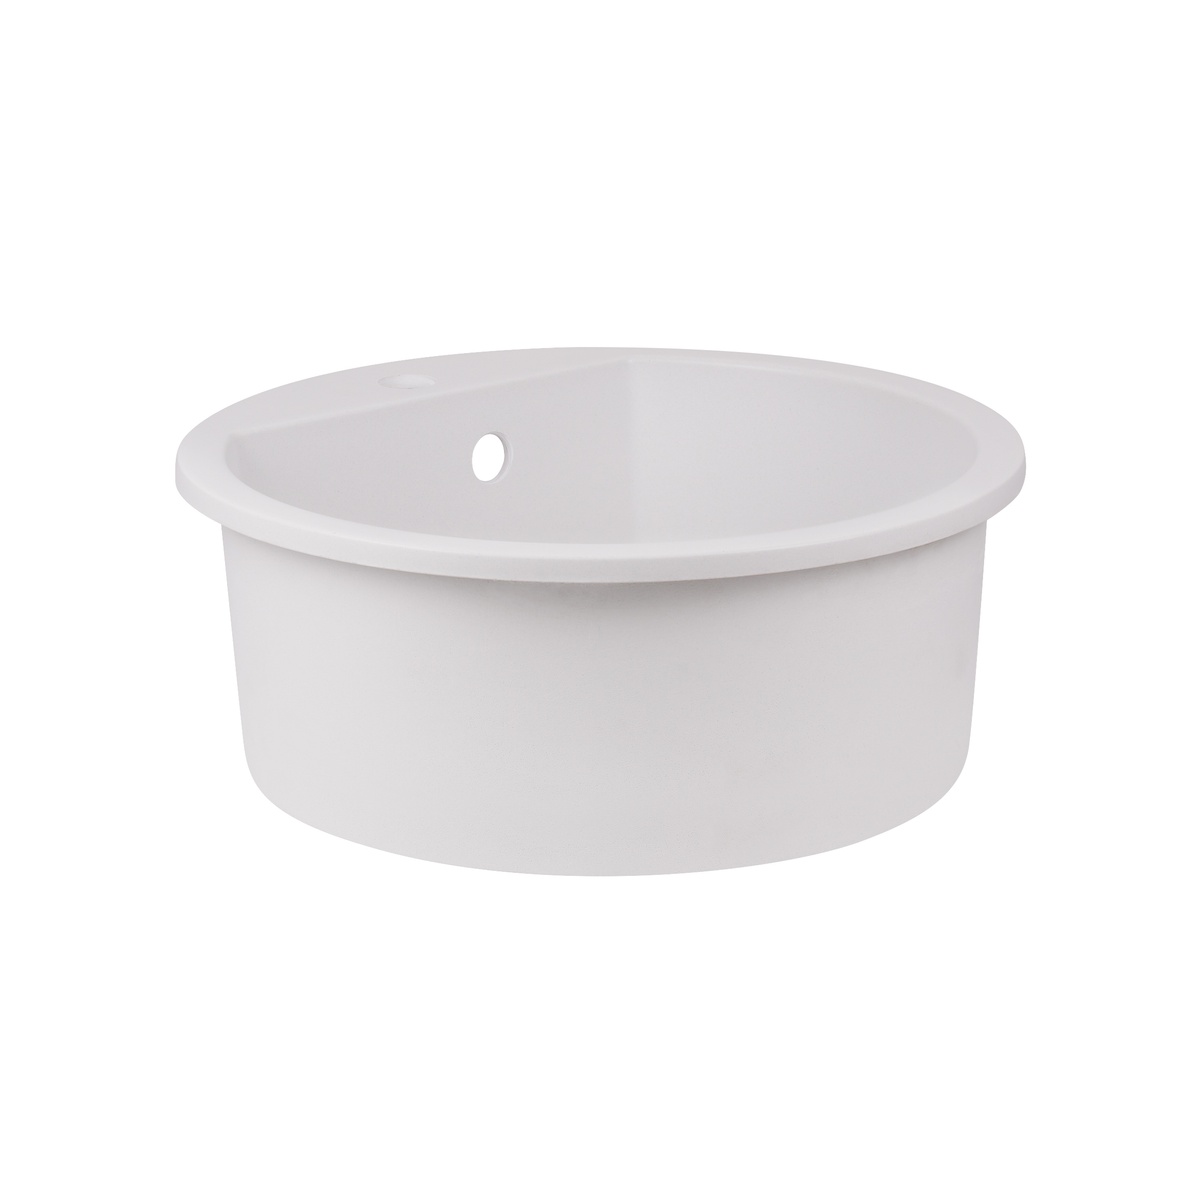 Мойка на кухню керамическая круглая Q-TAP CS 505мм x 505мм белый с сифоном QTD510WHI650